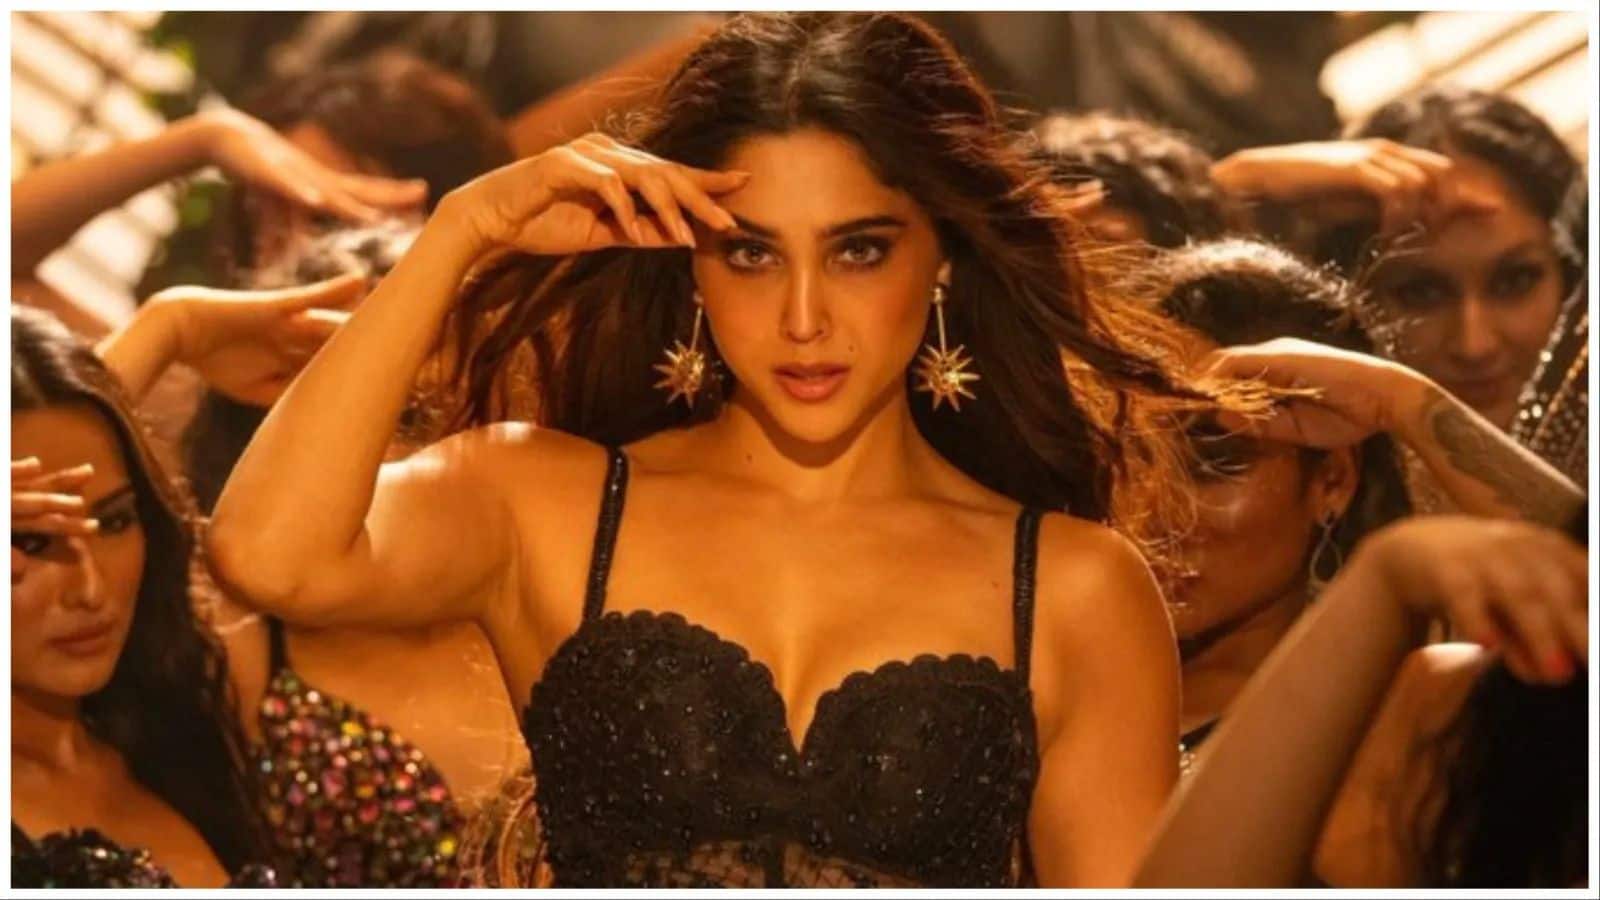 'Munjya' outperforms big-budget films, rakes in ₹19cr in opening weekend